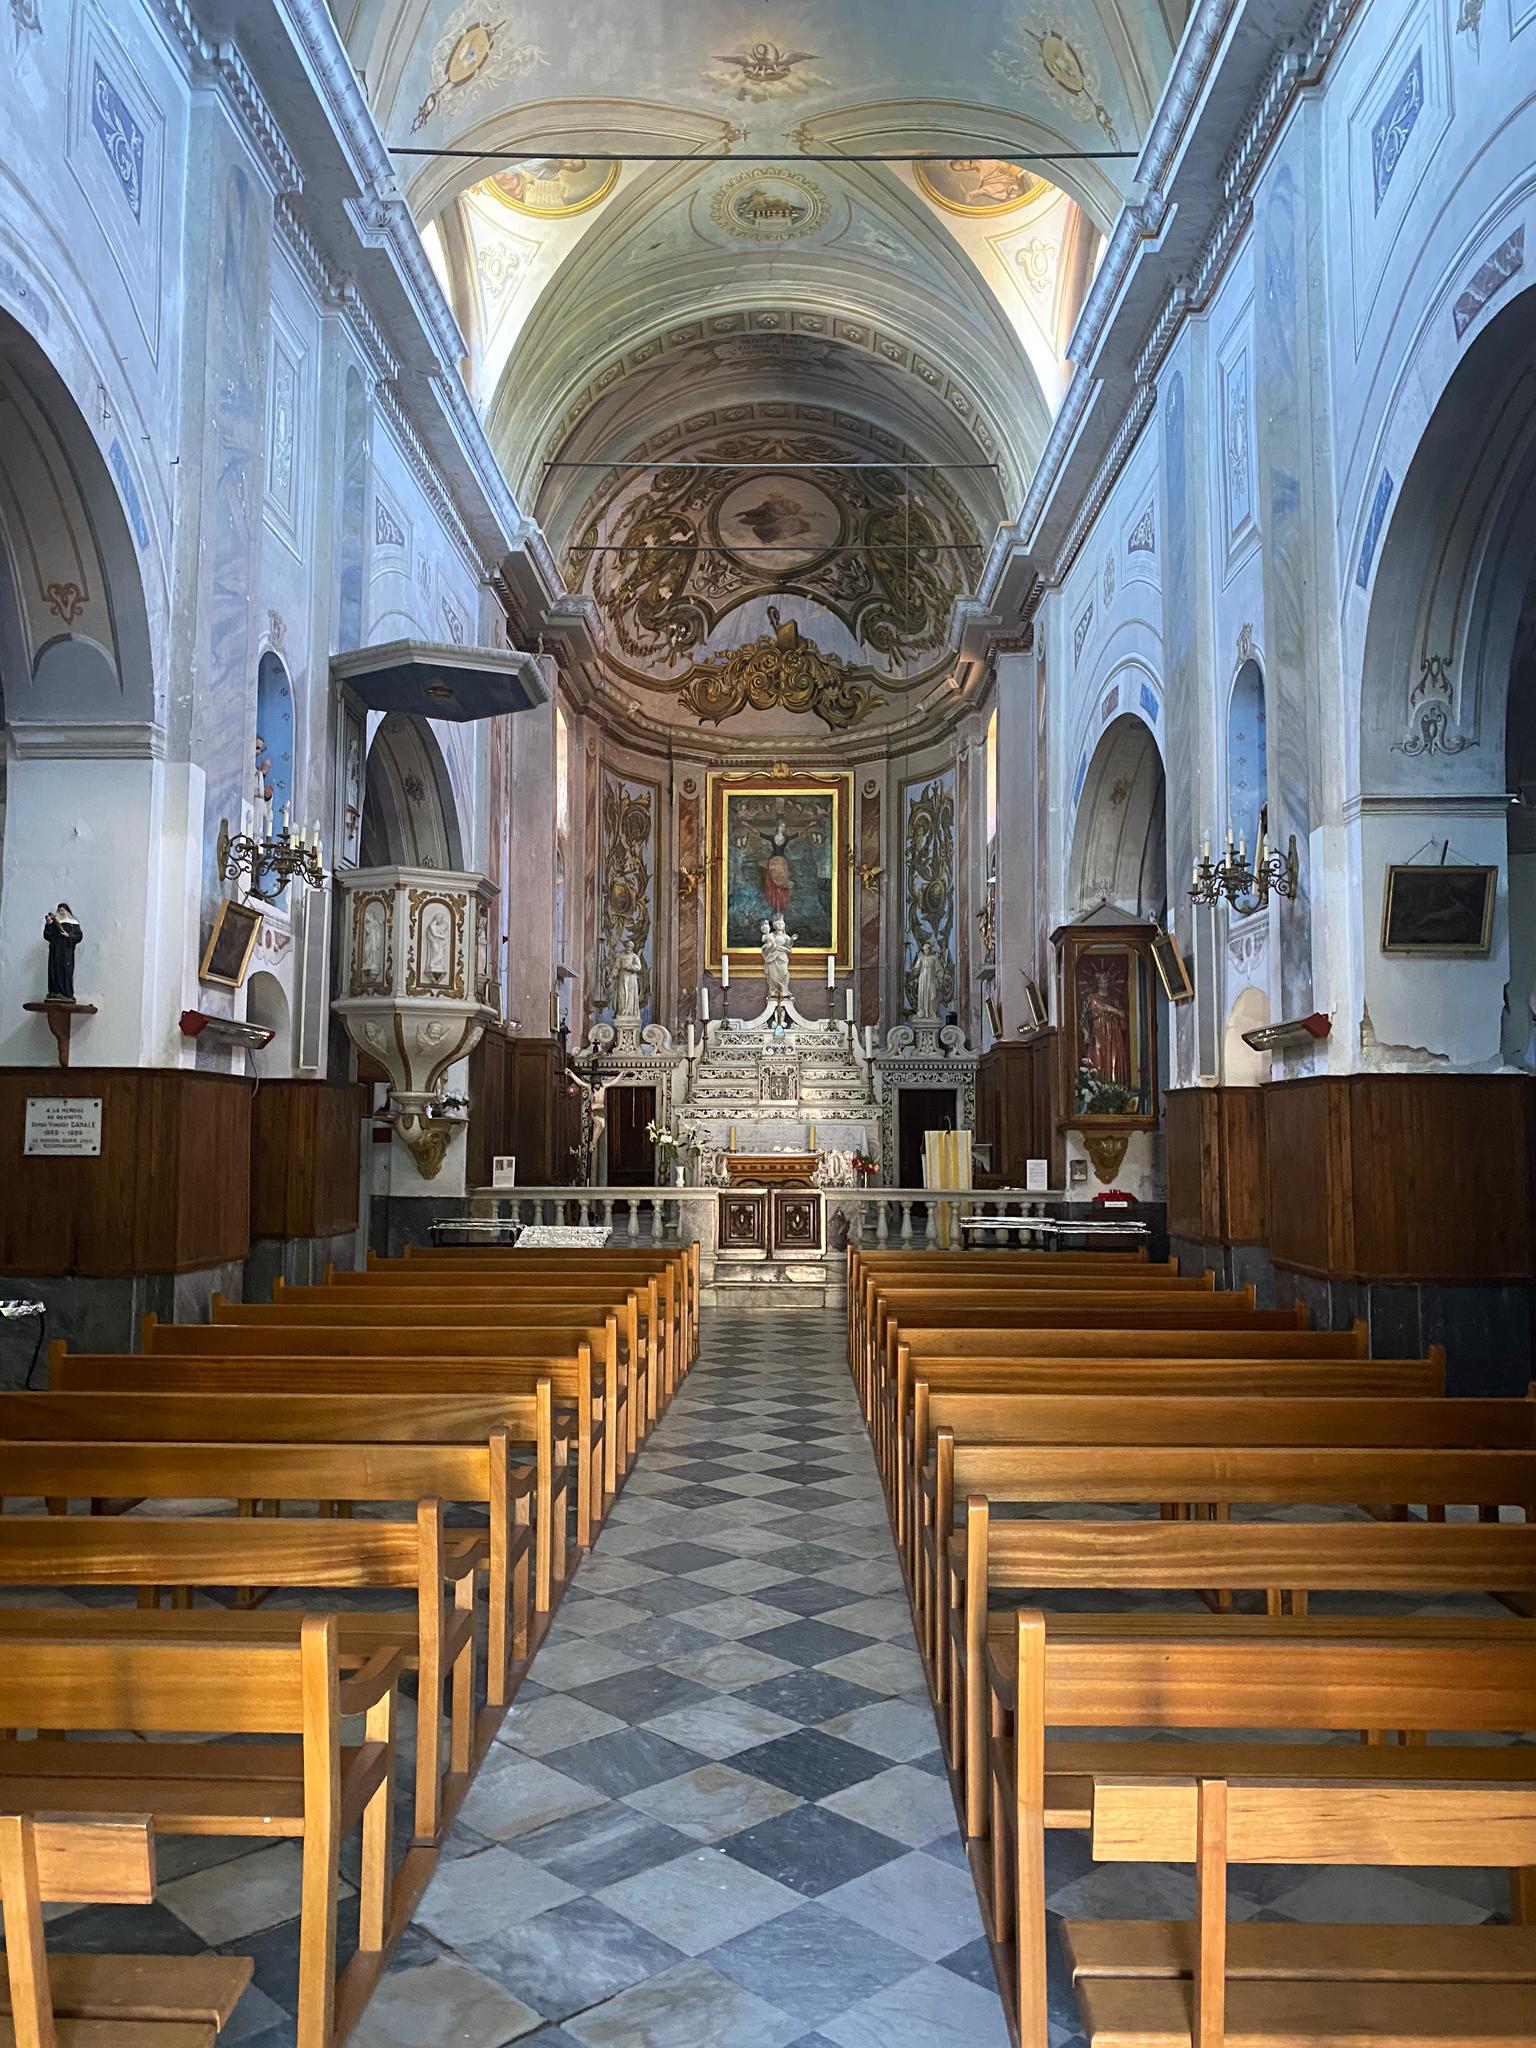 Corse : les messes de nouveau autorisées